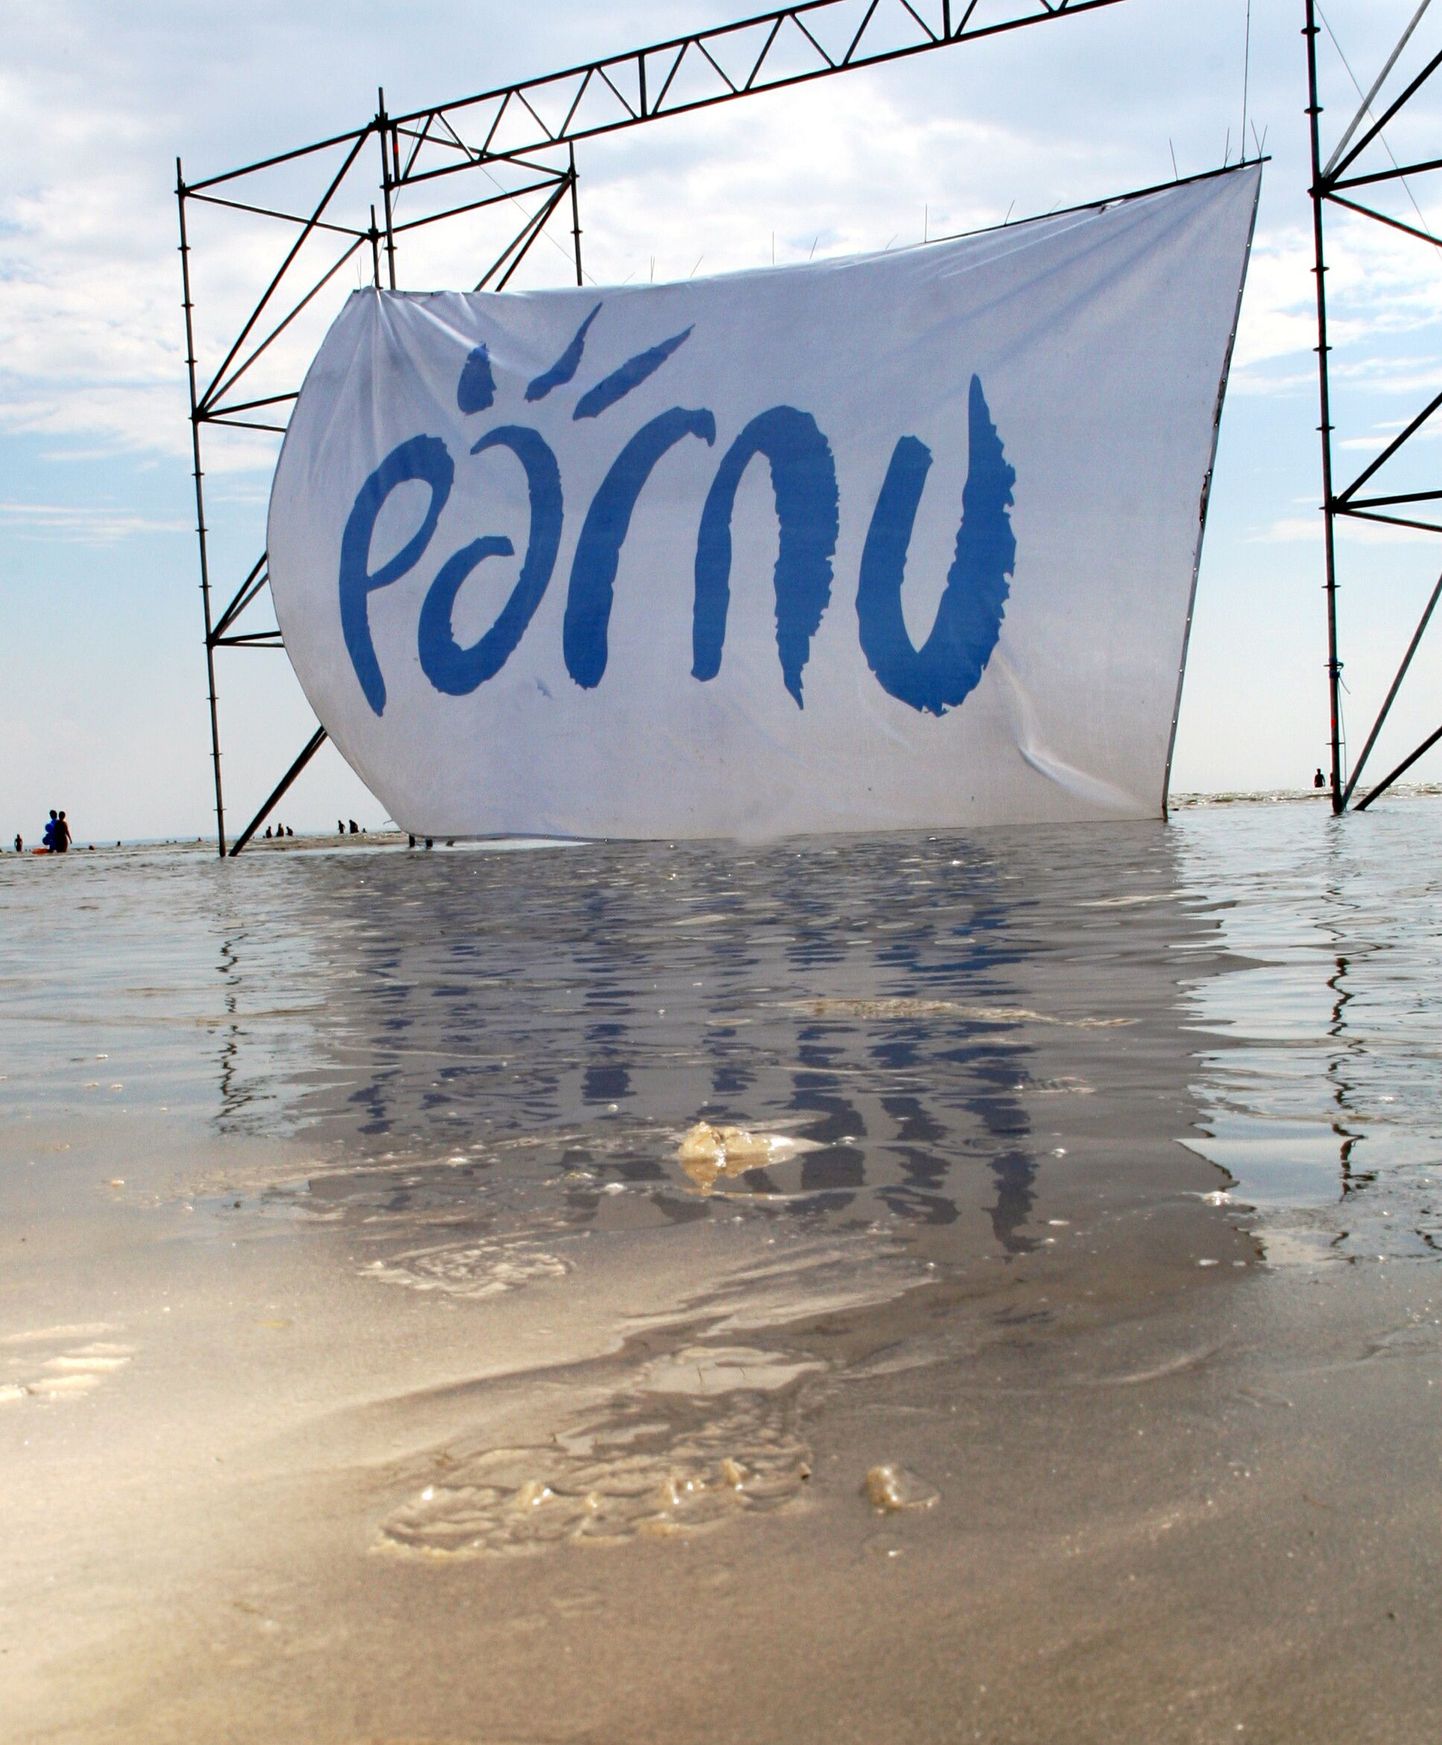 Pärnu logo.